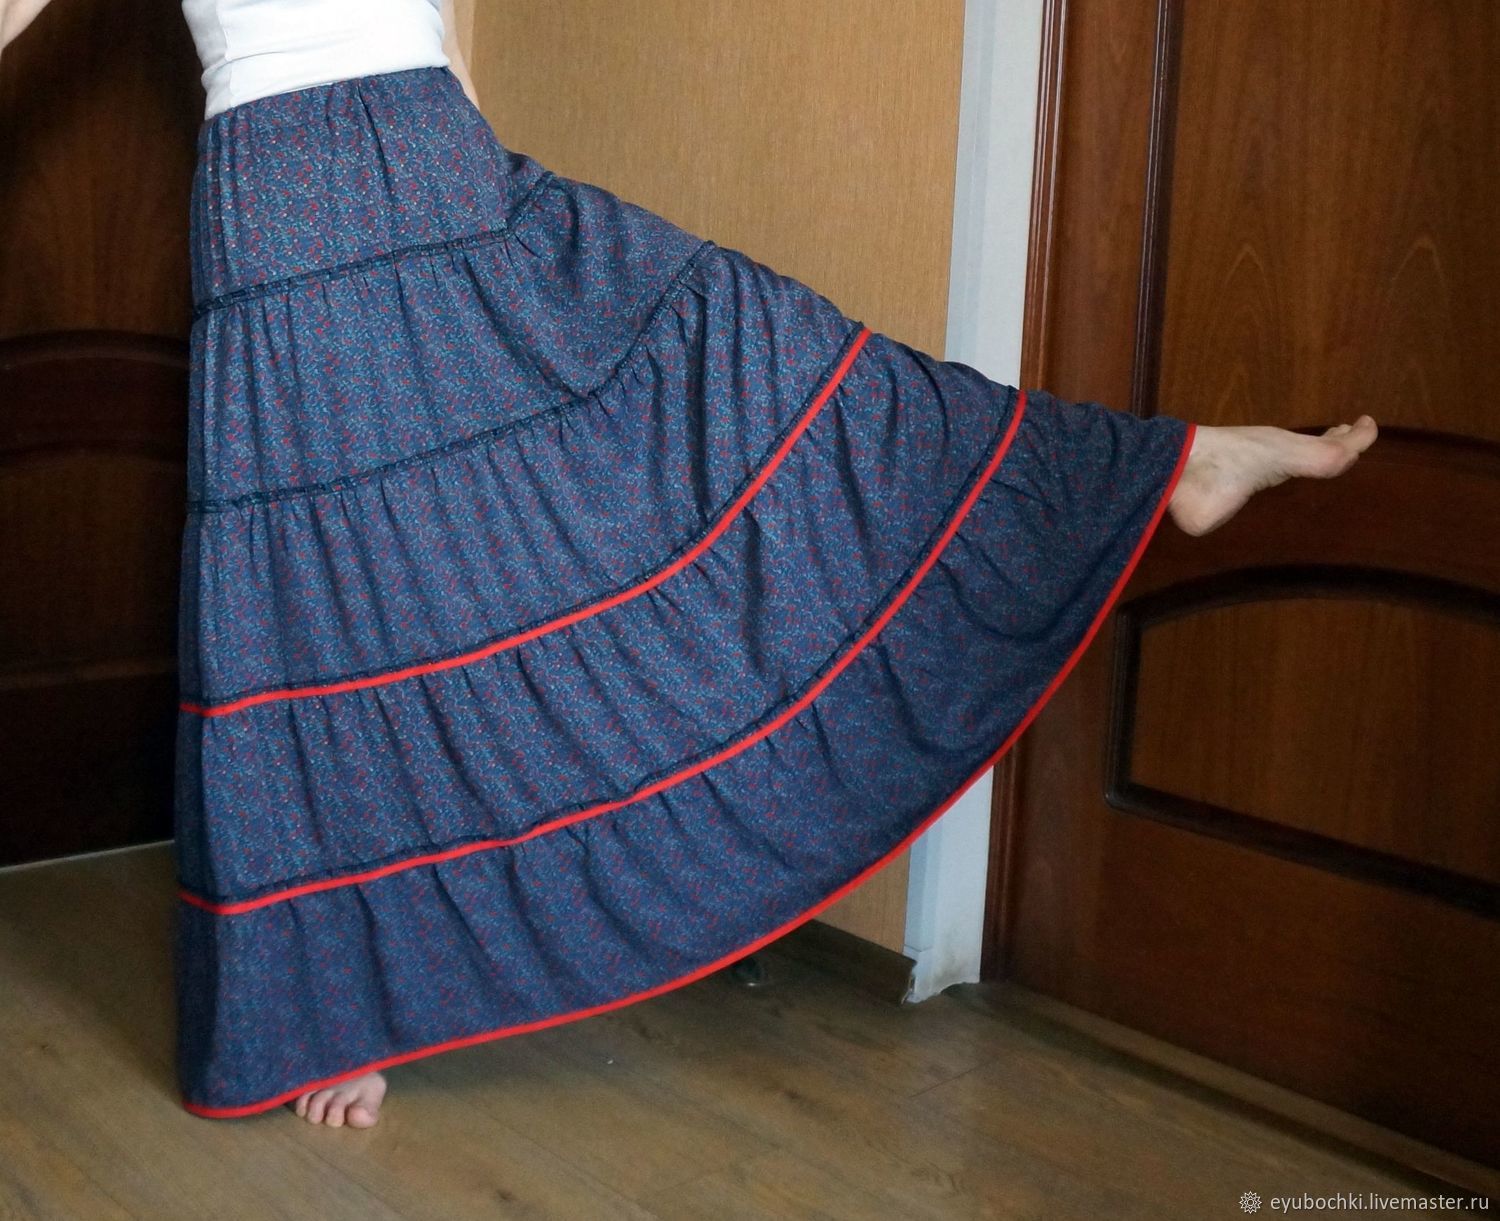 Трехъярусная юбка. Многоярусная юбка. Юбка ярусами. Многоярусная юбка на резинке.